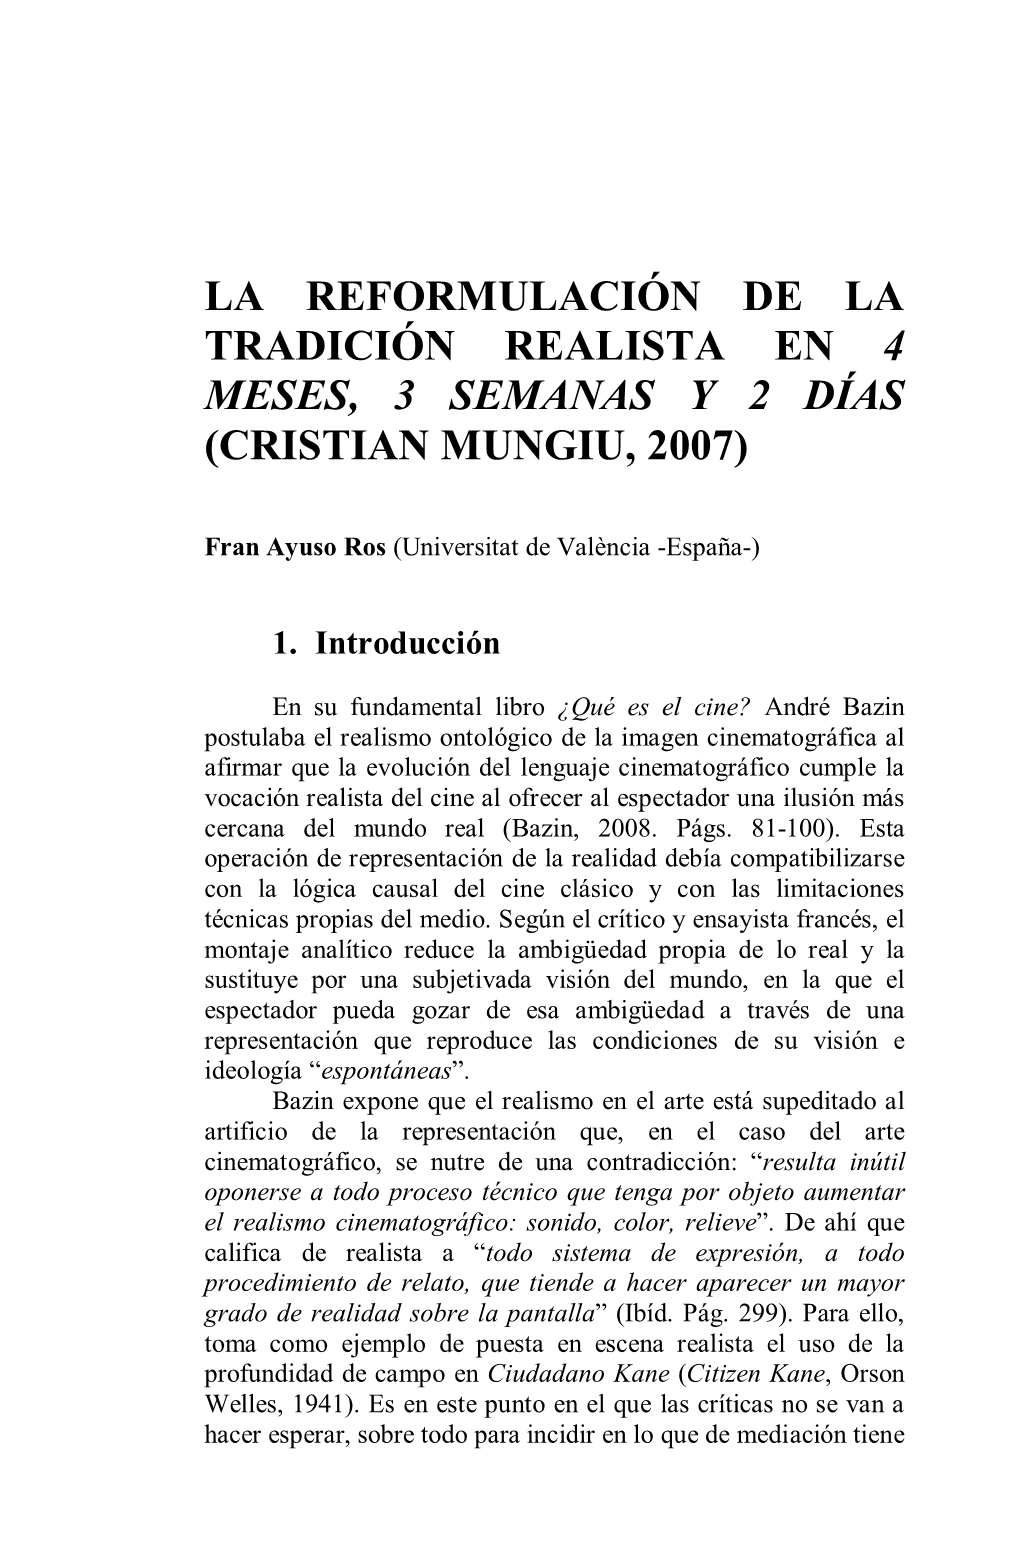 La Reformulación De La Tradición Realista En 4 Meses, 3 Semanas Y 2 Días (Cristian Mungiu, 2007)